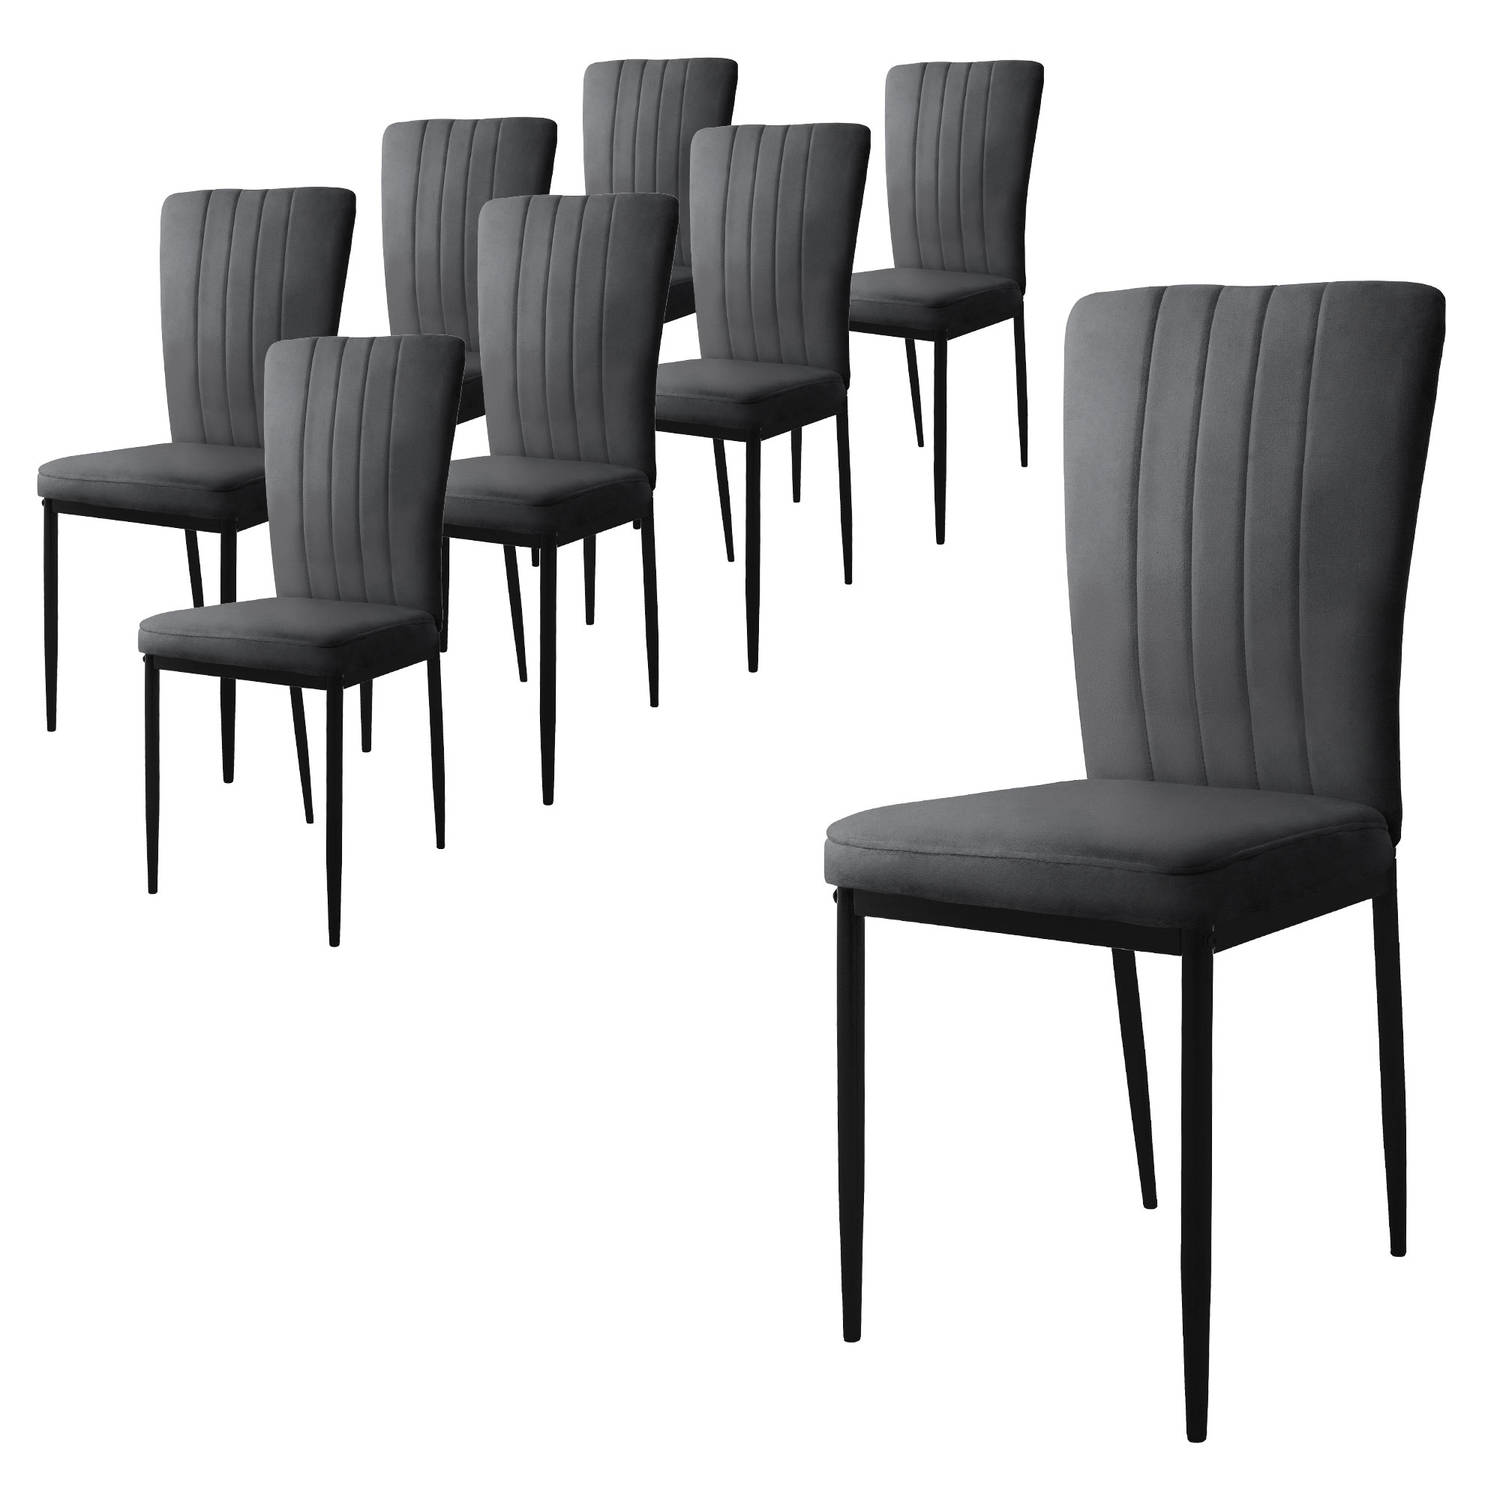 ML-Design eetkamerstoelen set van 8 met fluwelen bekleding, grijs, keukenstoelen met rugleuning, gestoffeerde stoel met metalen poten, ergonomische eettafelstoel, moderne eetkamers